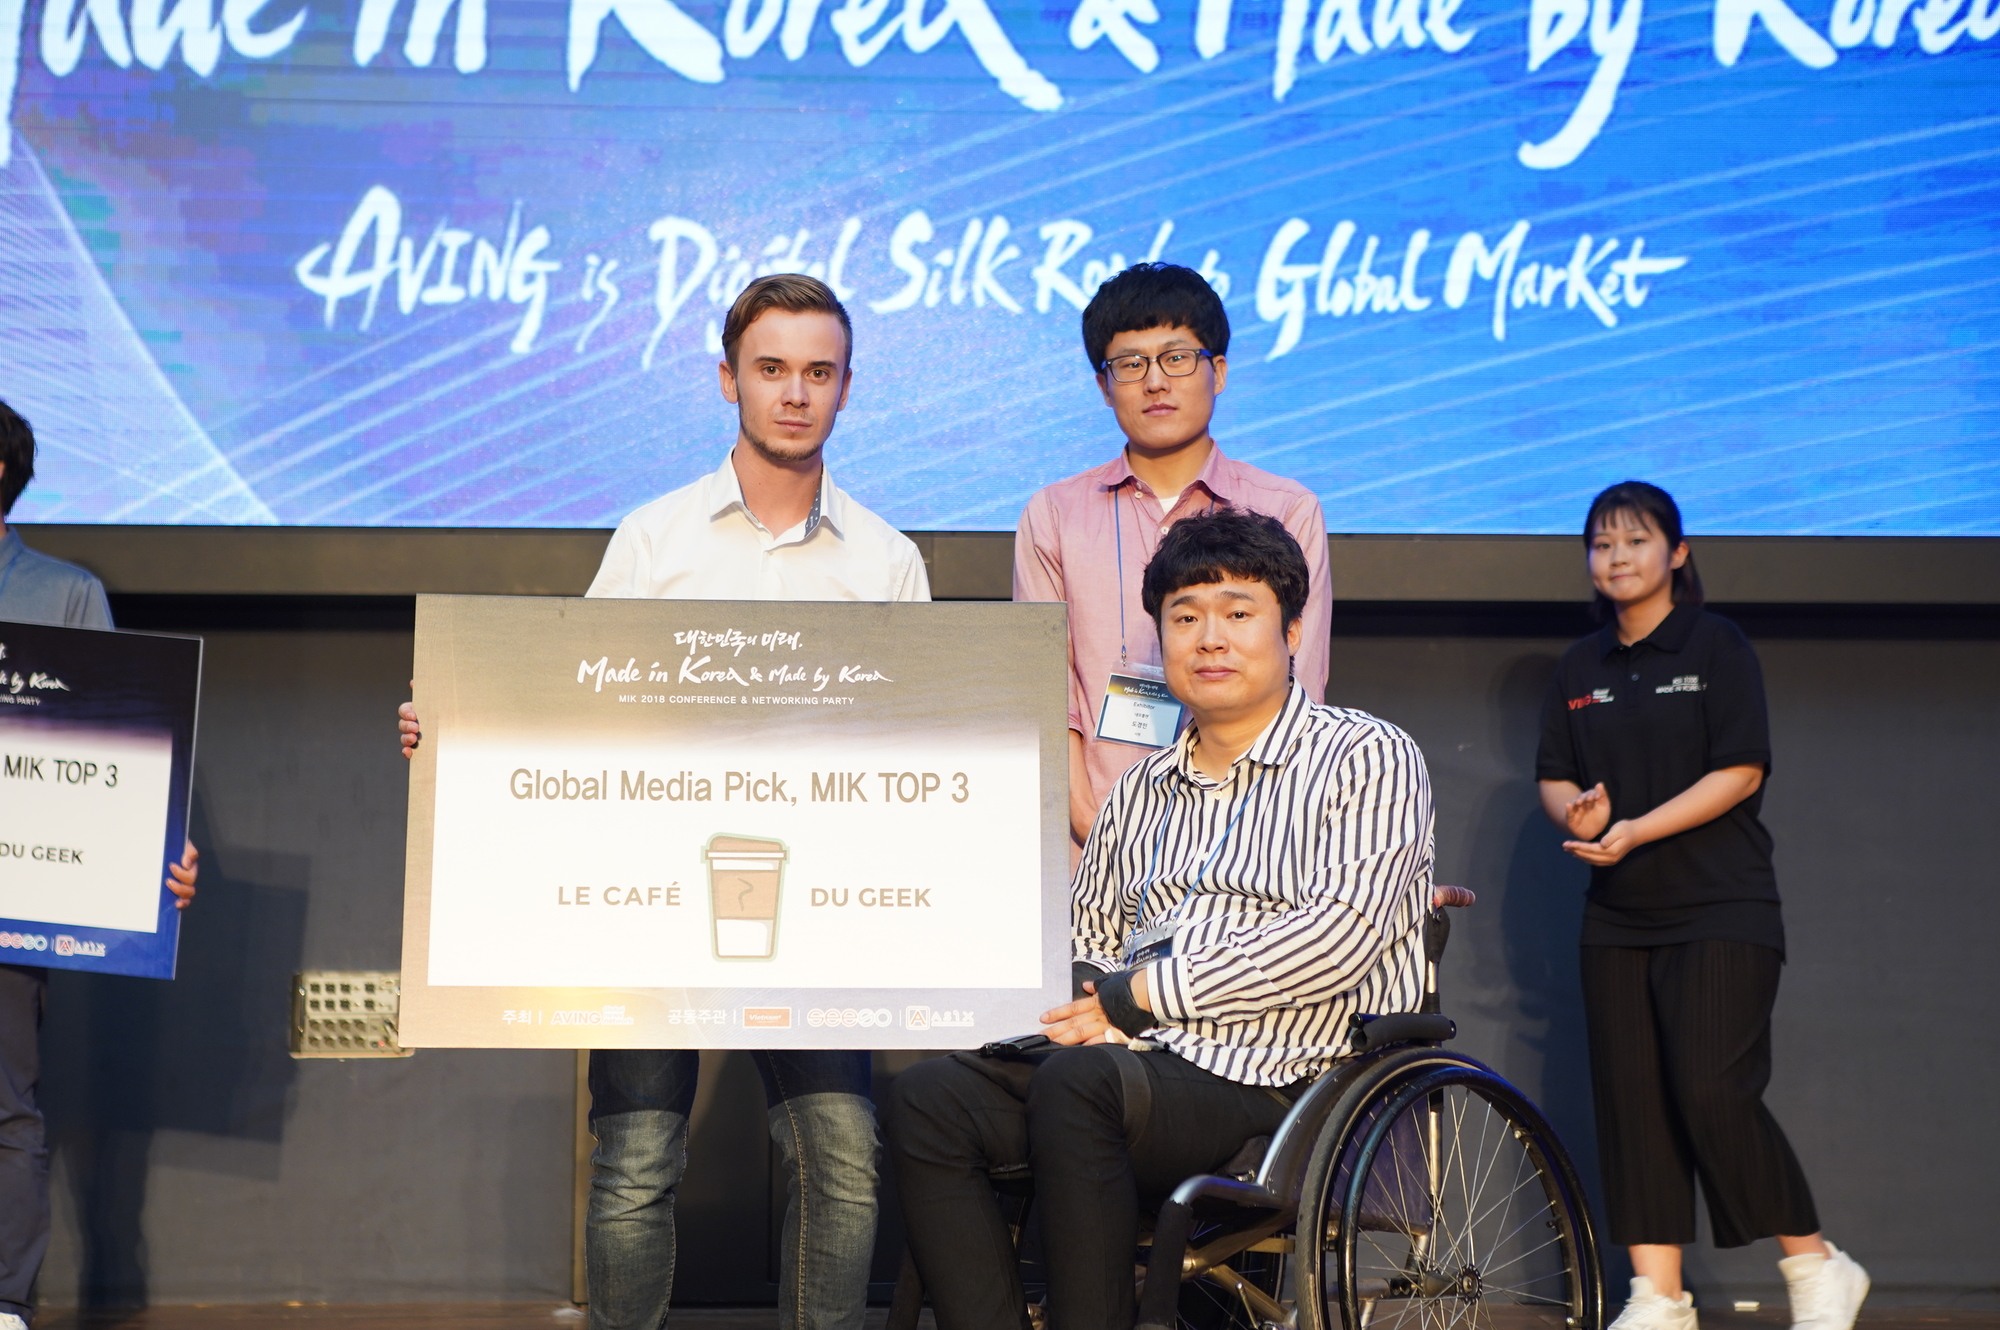 startups DSD Tech MIK Séoul – Les startups et l’innovation Coréenne en avant ! corée du sud